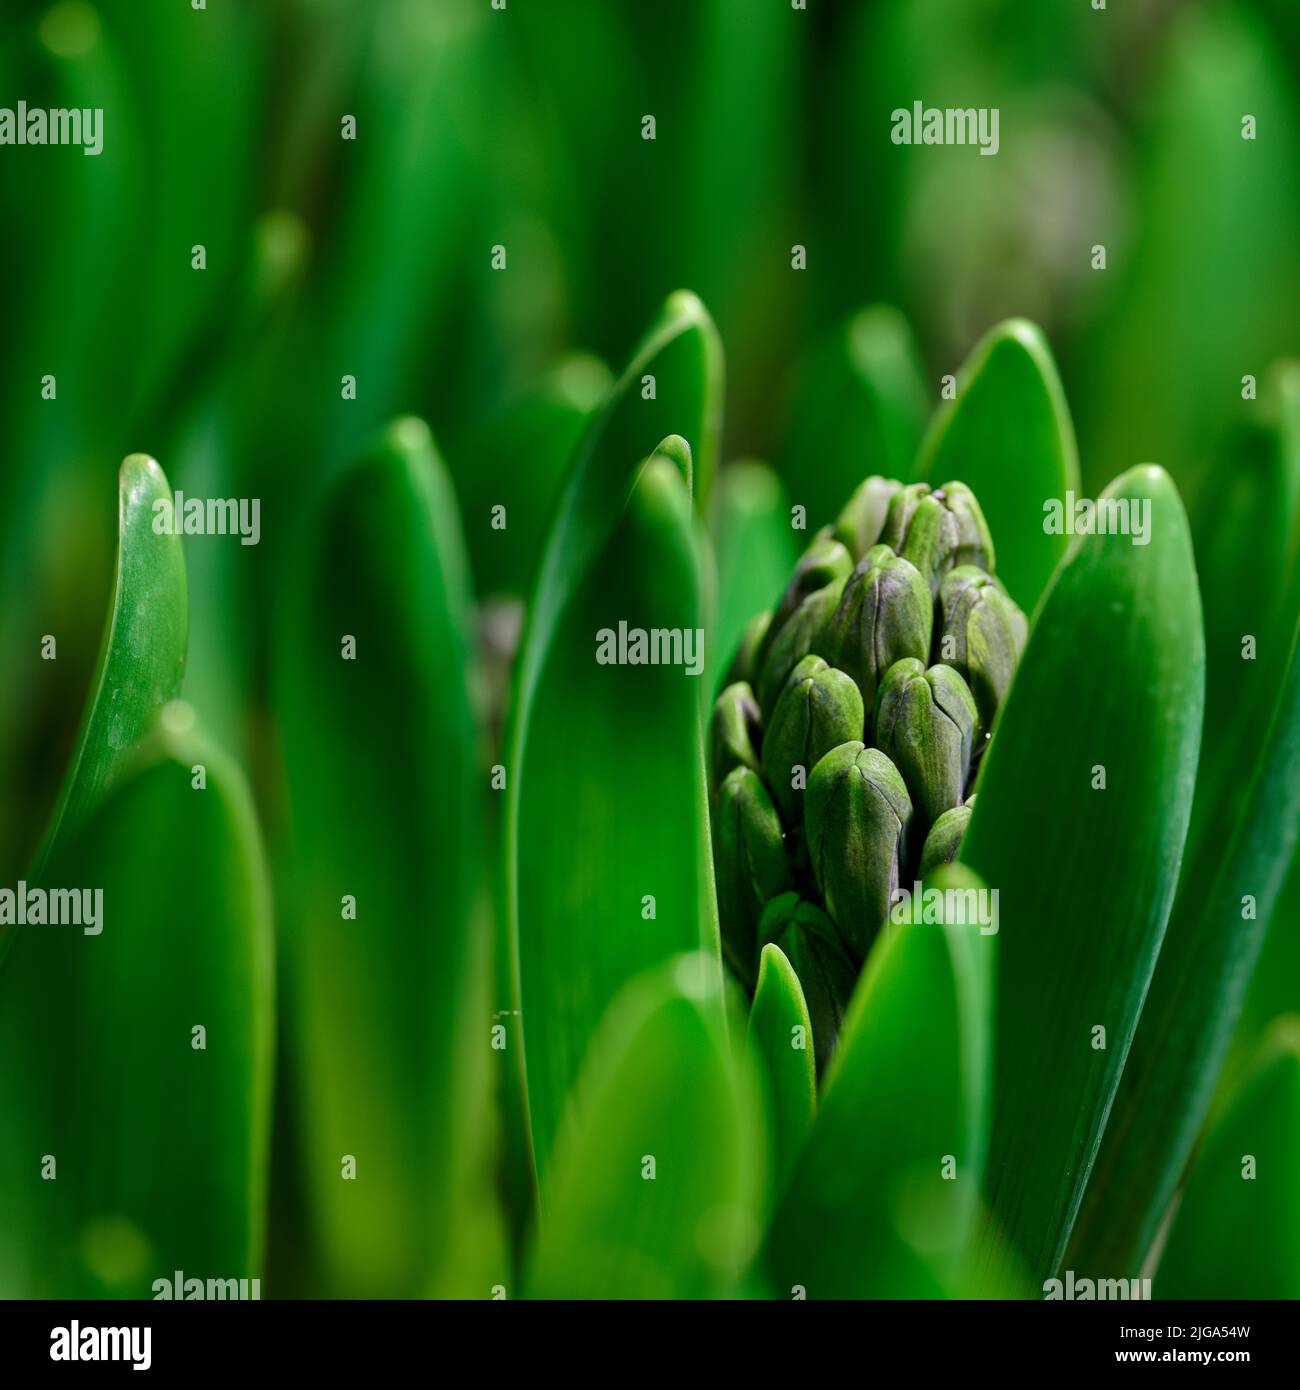 Nahaufnahme von grünen Krokus flavus Blumenzwiebeln, die in einem Garten sprießen. Kleine Sämlinge, die sich öffnen und zu Blättern mit Knospen wachsen, um leuchtende Blütenblätter zu produzieren Stockfoto